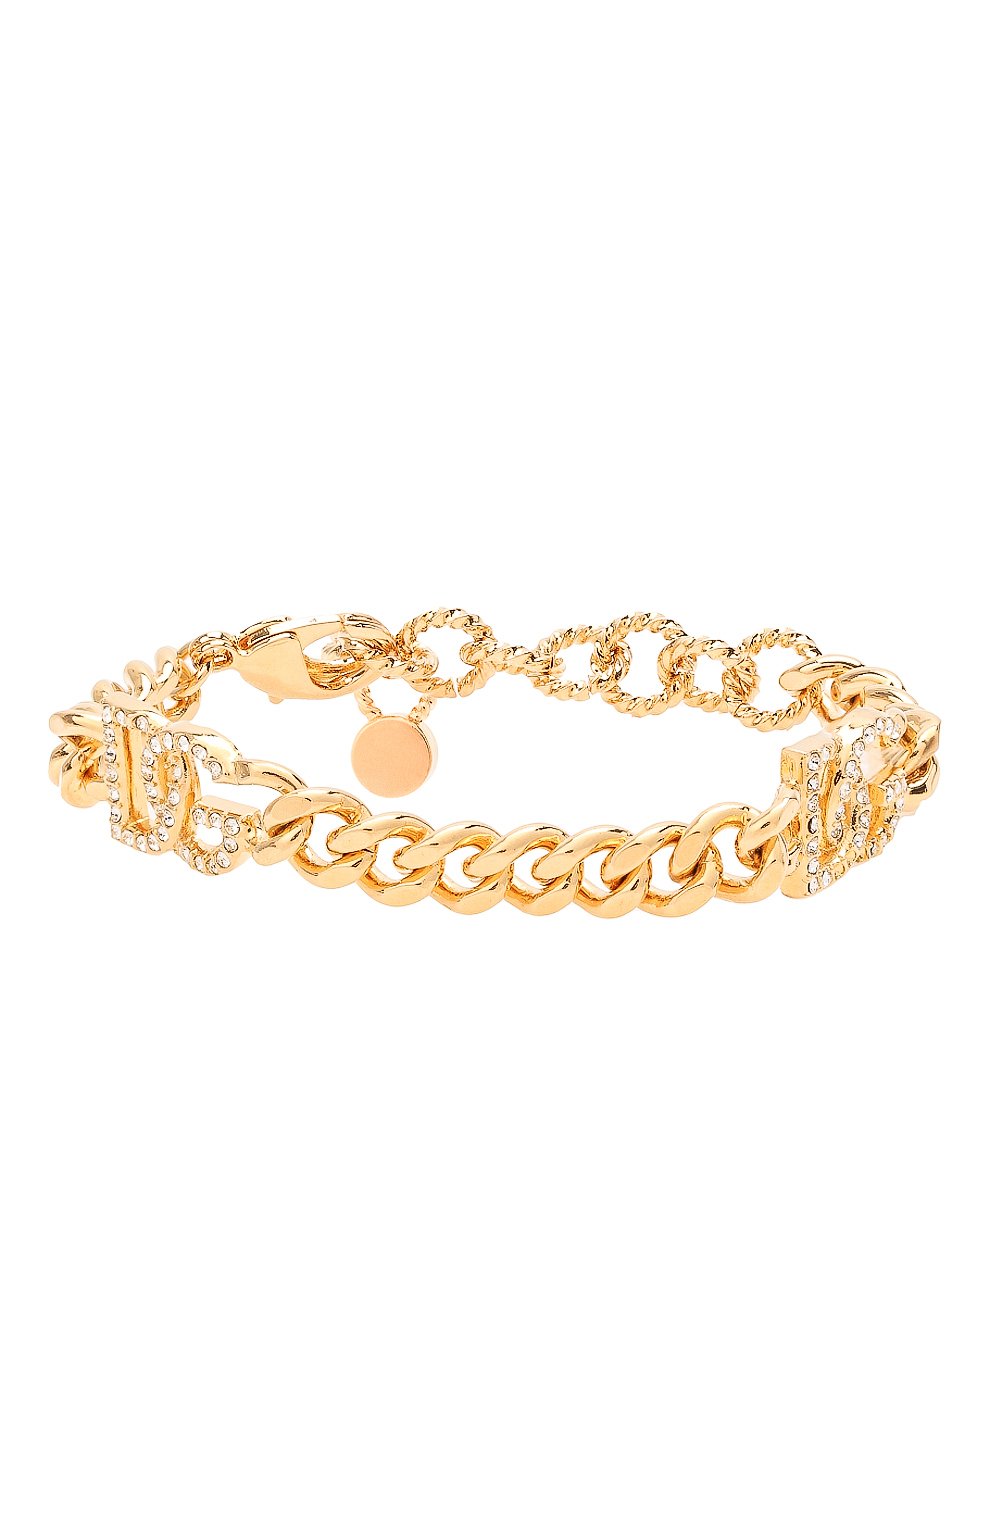 Женский золотой браслет DOLCE & GABBANA — купить в интернет-магазине